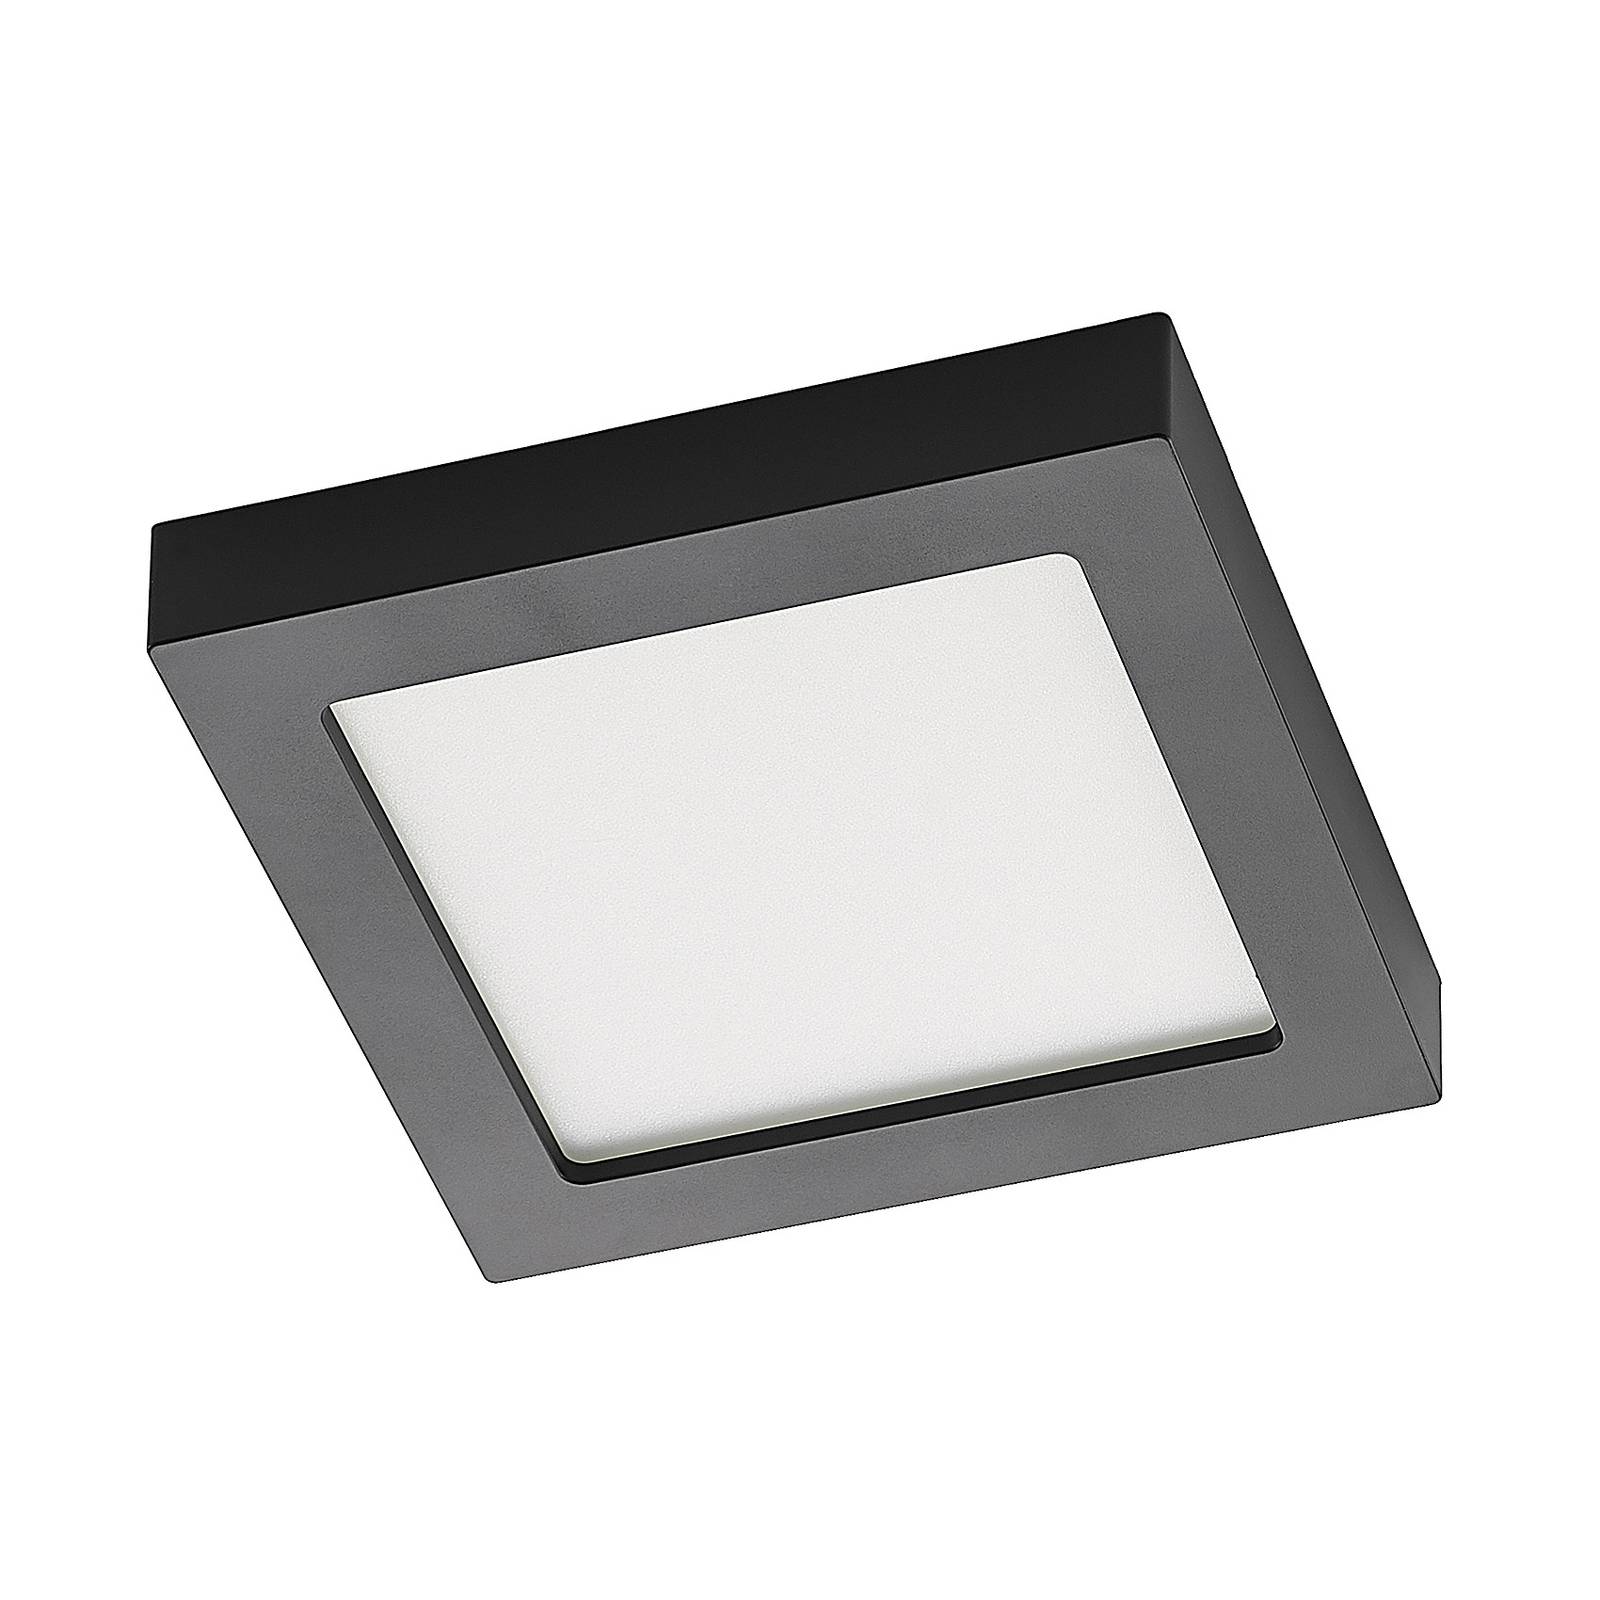 Prios Alette LED-Deckenlampe, schwarz, CCT, 24 W